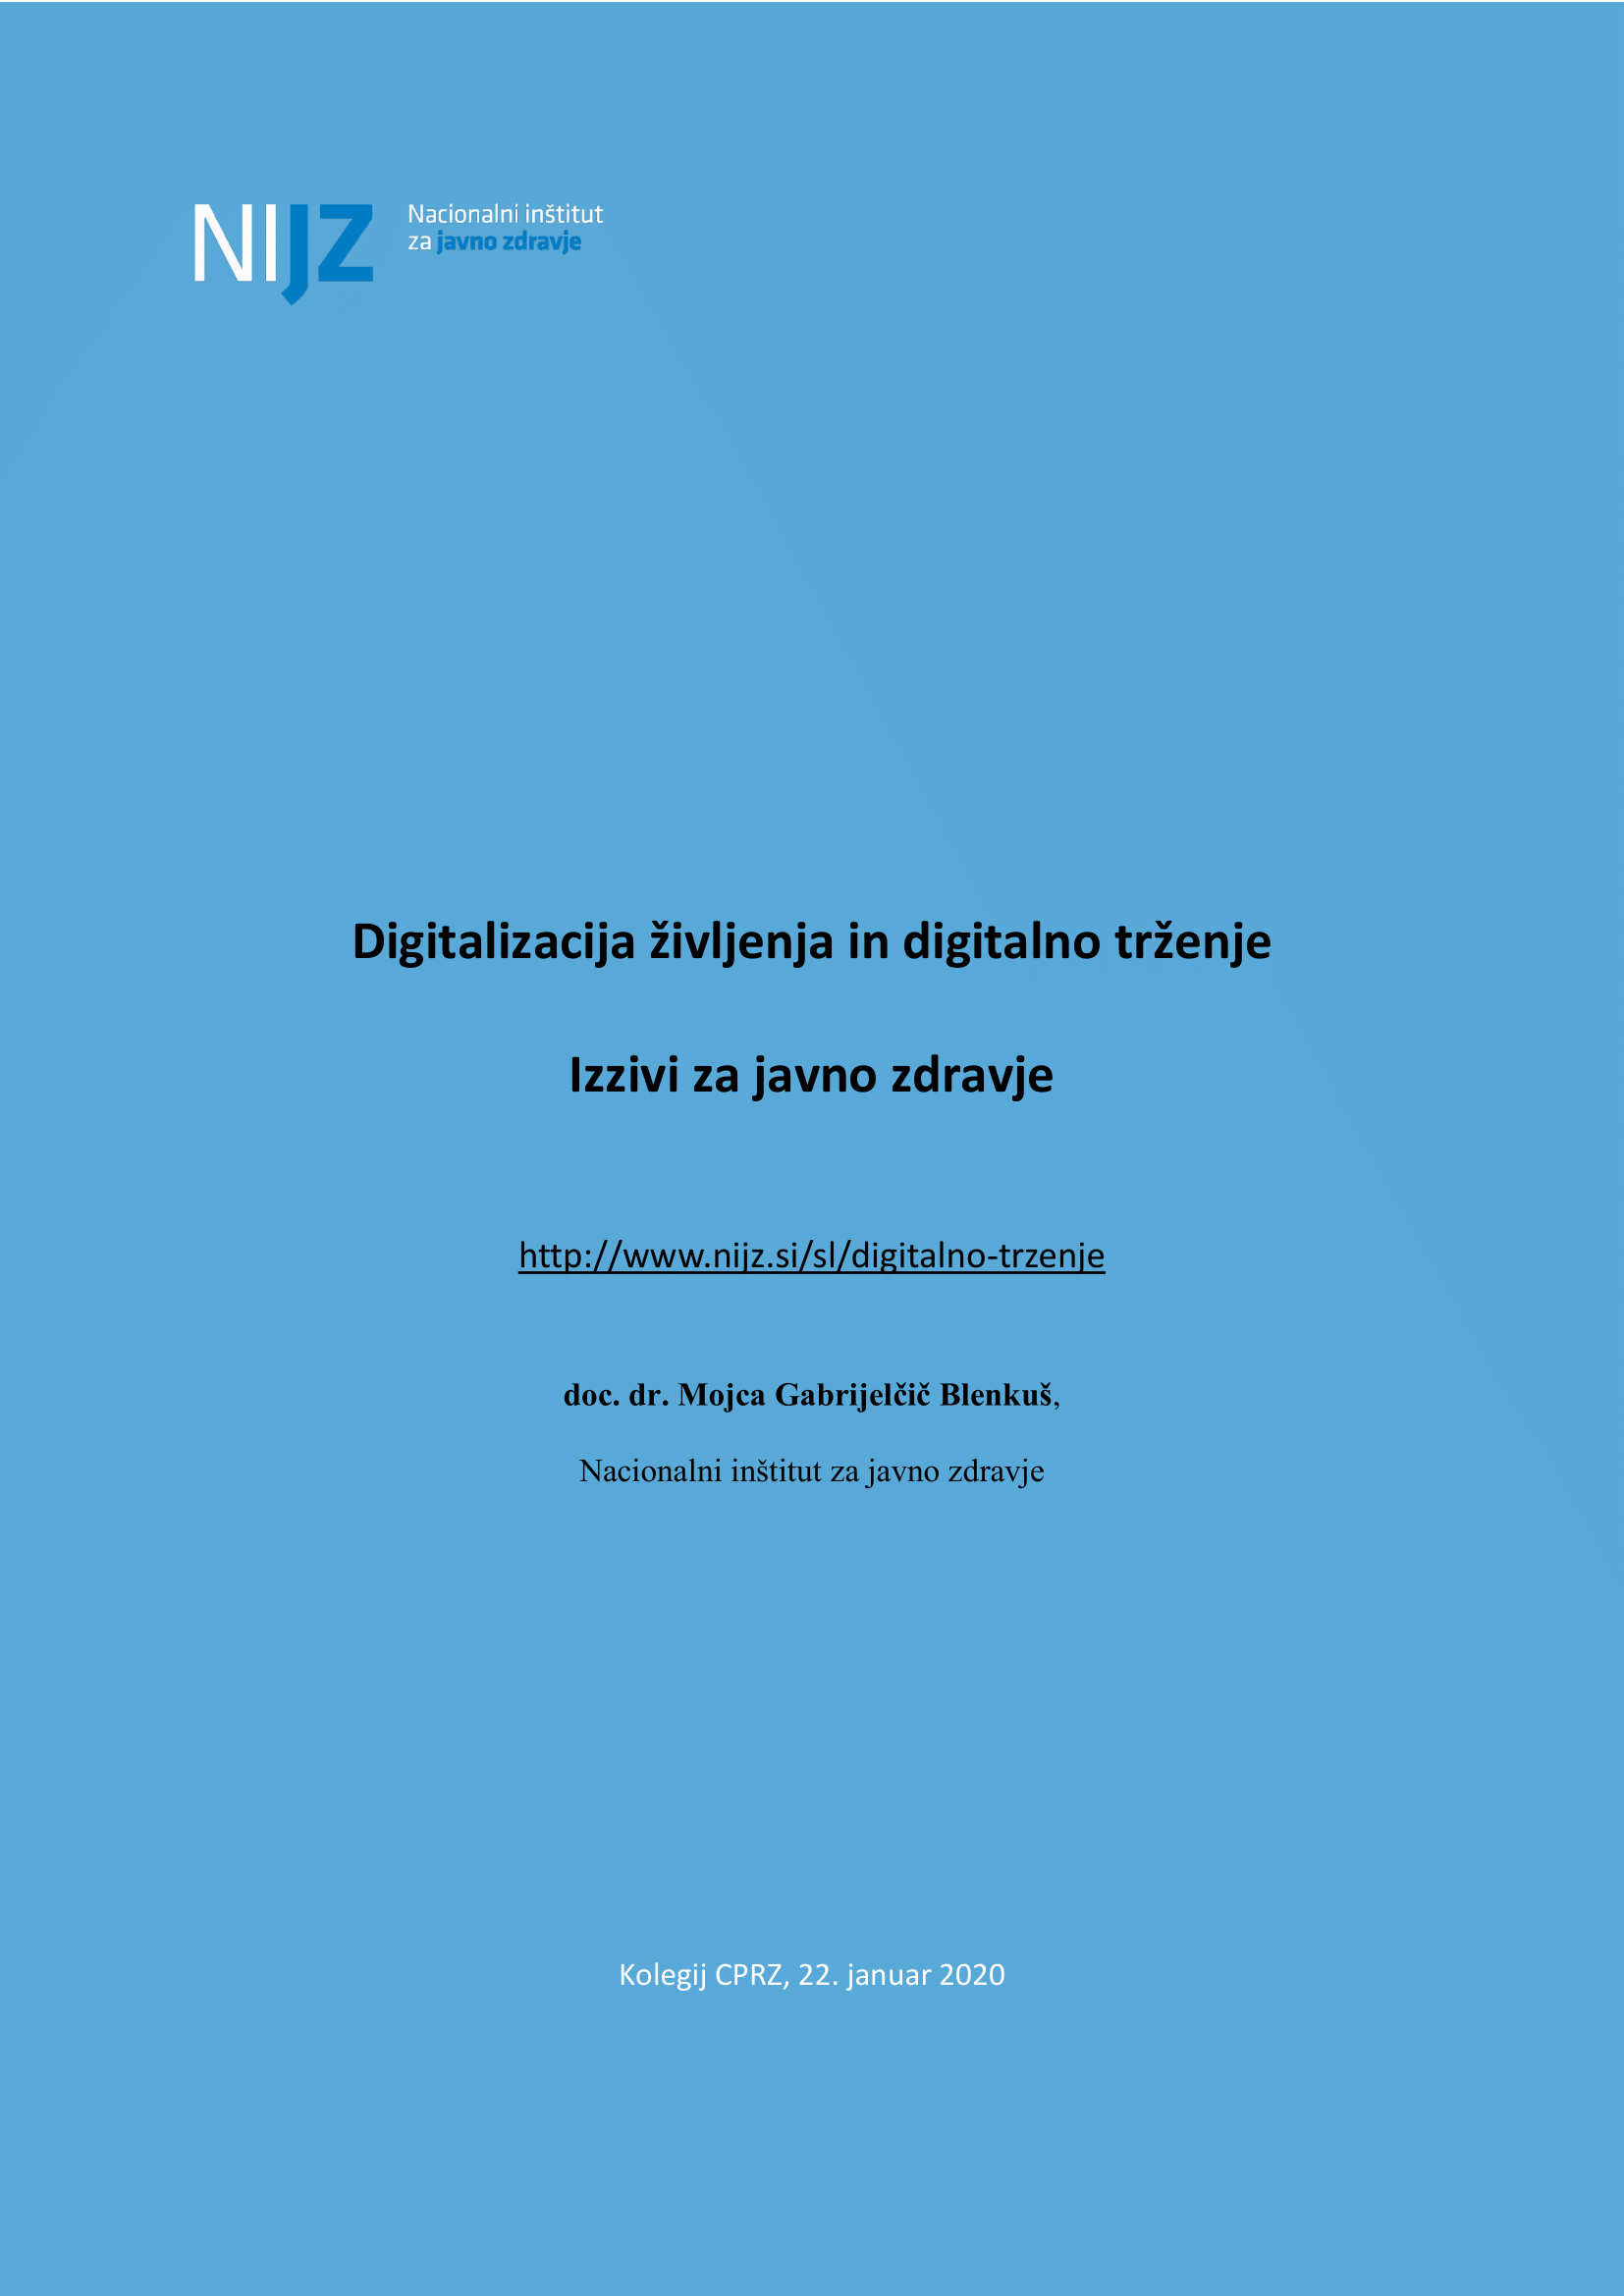 digitalizacija_zivljenja_in_digitalno_trzenje_izzivi_za_javno_zdravje_24.1.2020-1-1